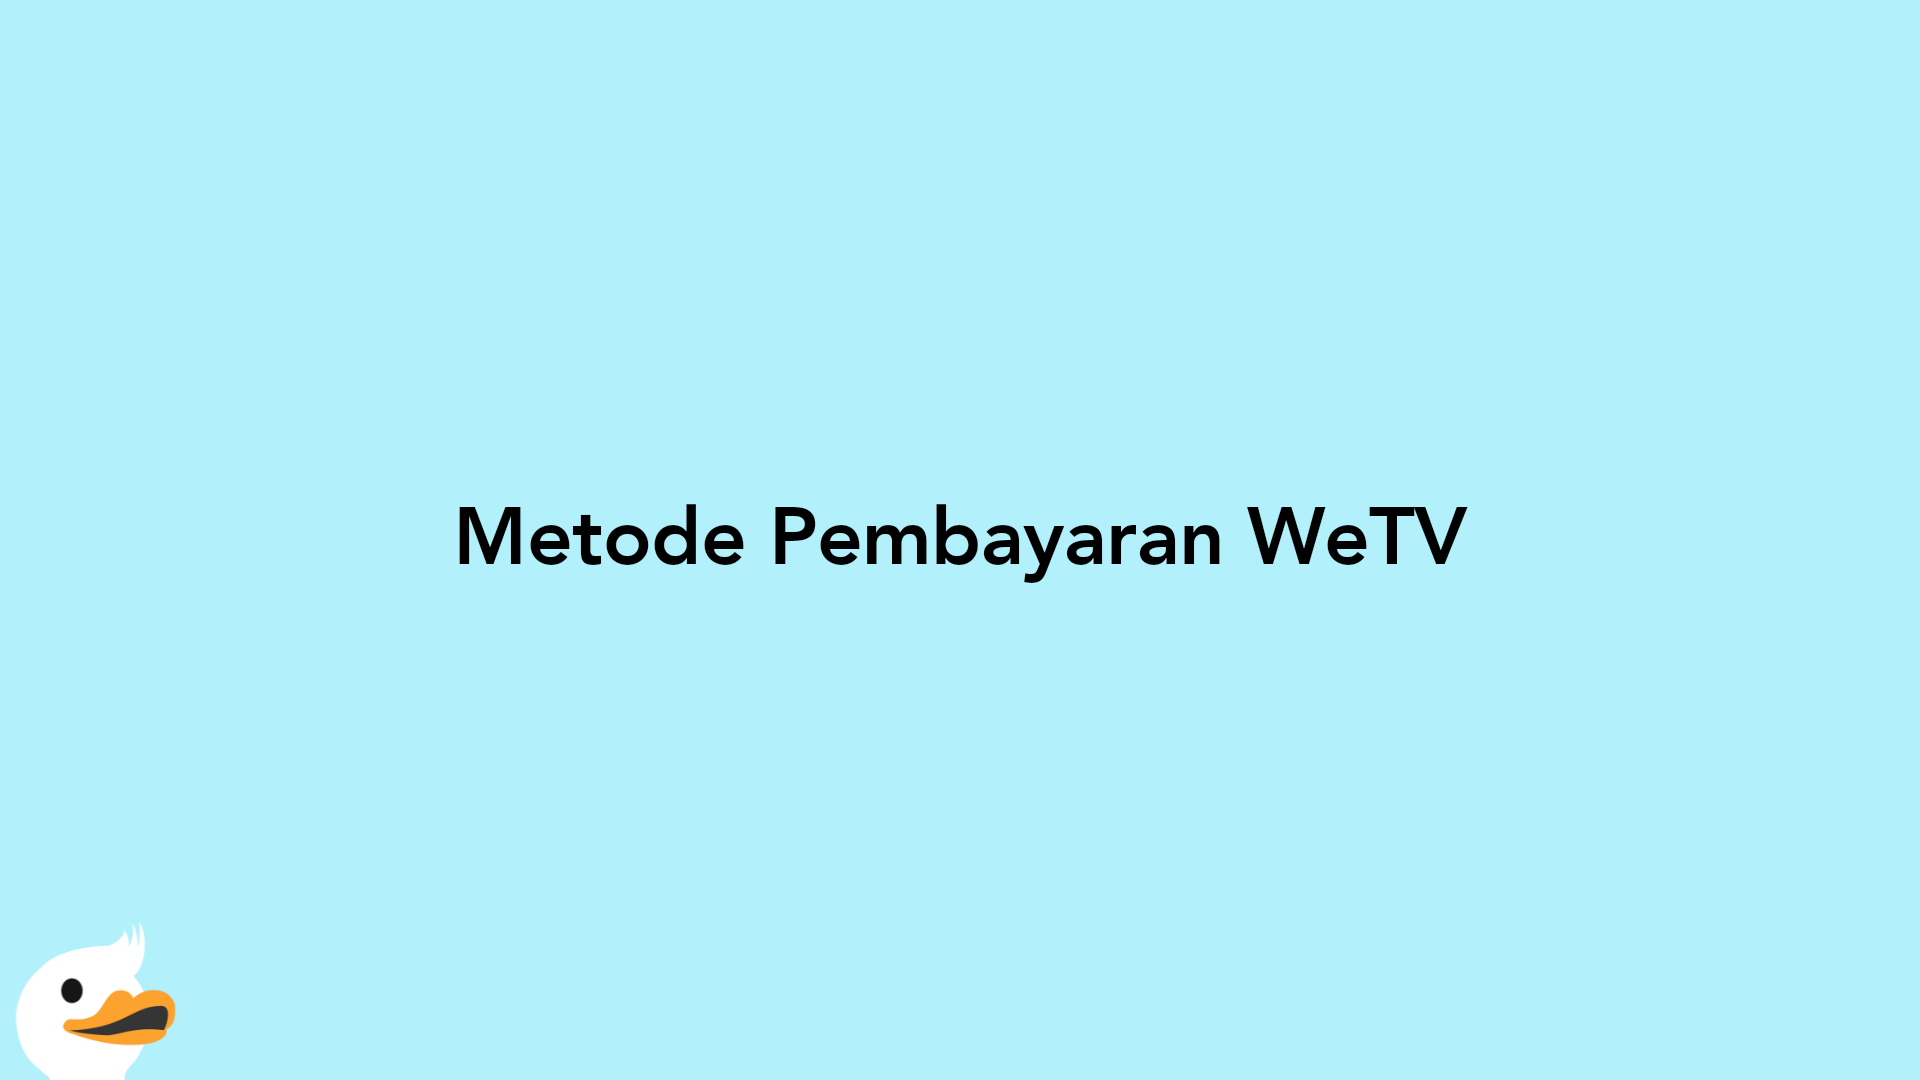 Metode Pembayaran WeTV